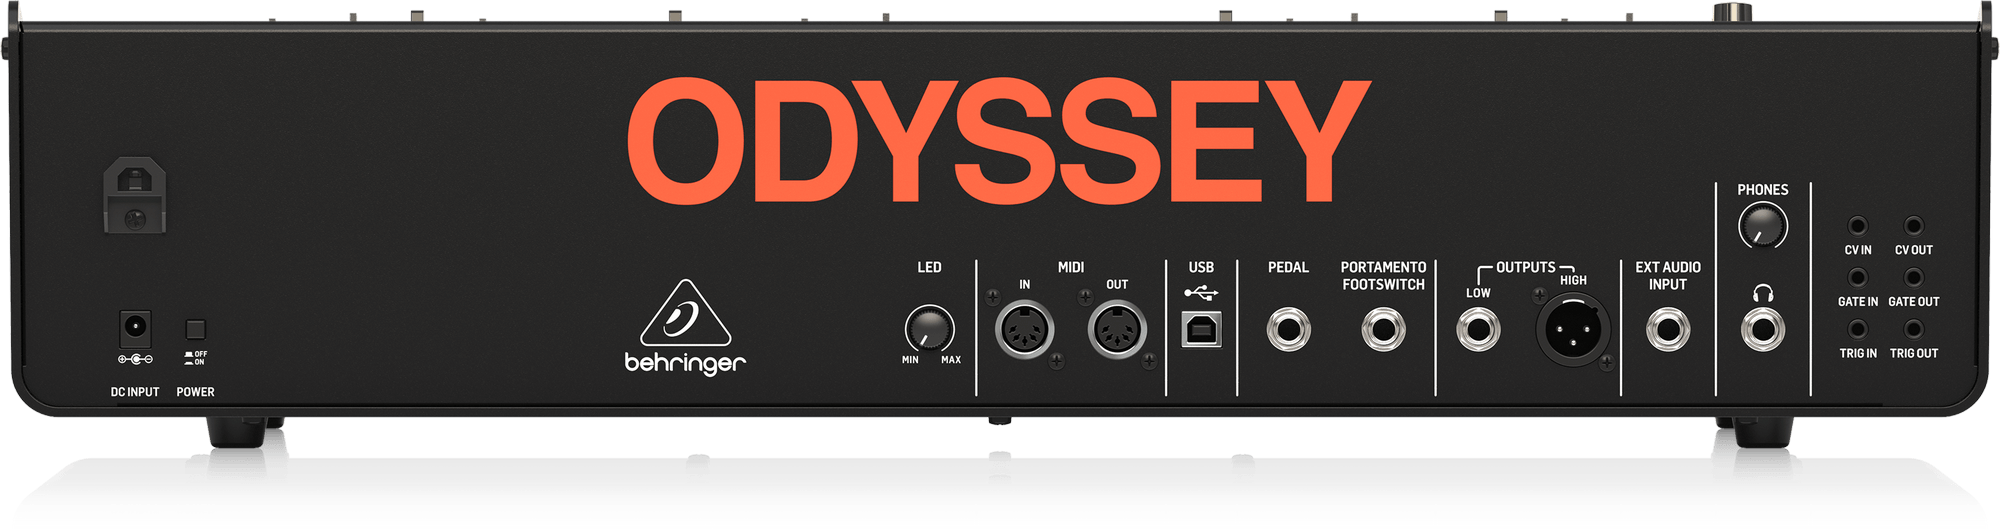 BEHRINGER ODYSSEY - аналоговый дуофонический синтезатор, 37 клавиш купить в prostore.me